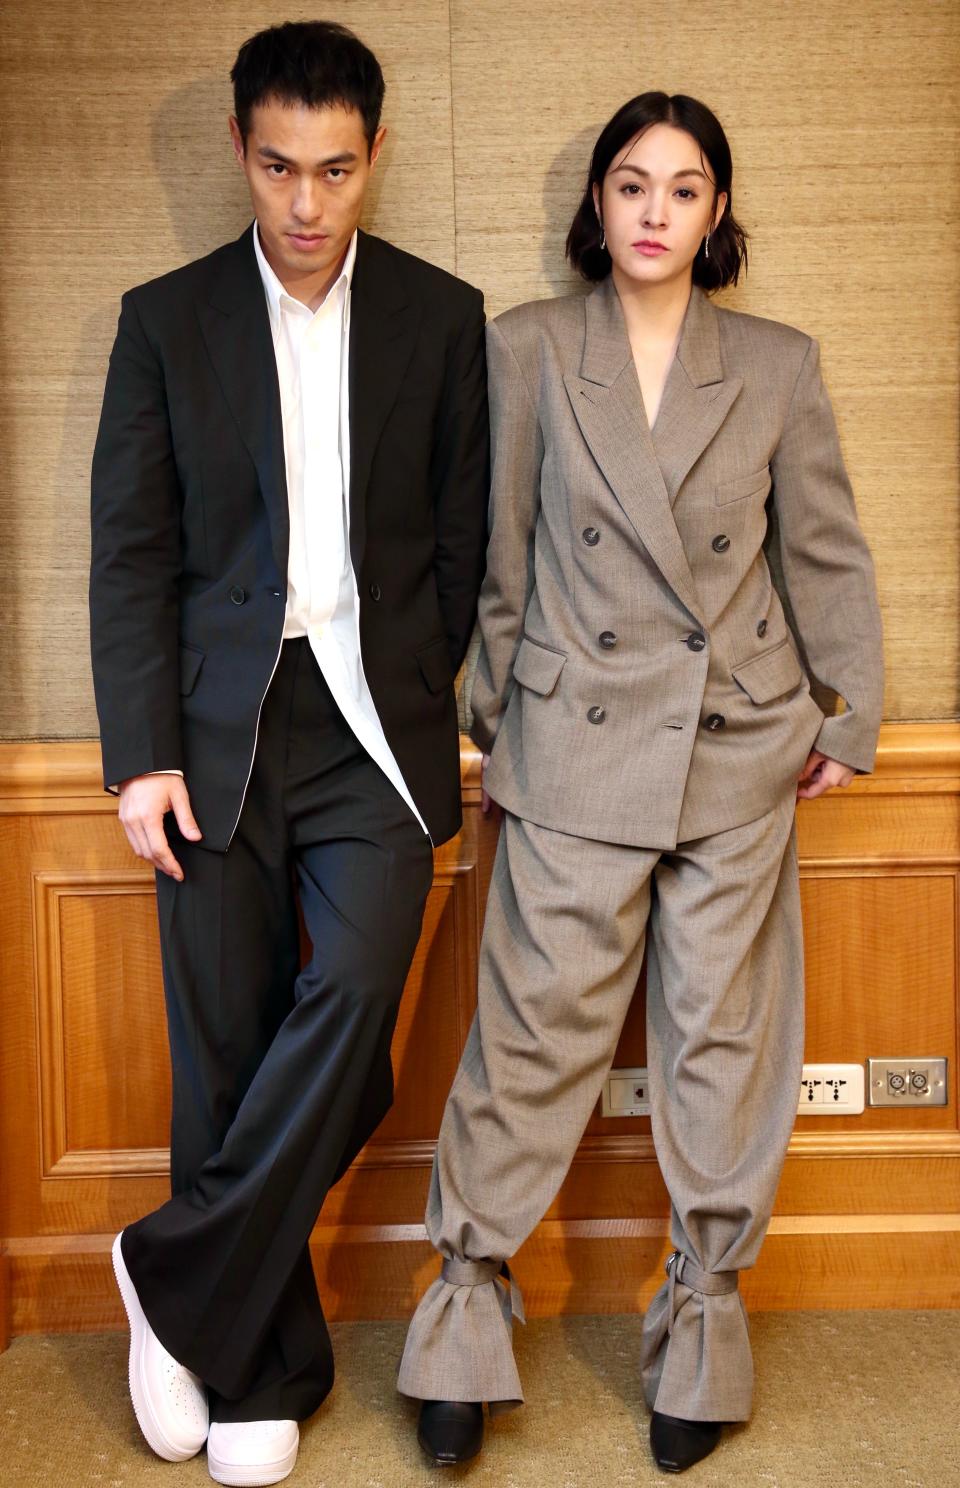 Tony Yang and Sandrine Pinna in Taipei, February 23, 2021.